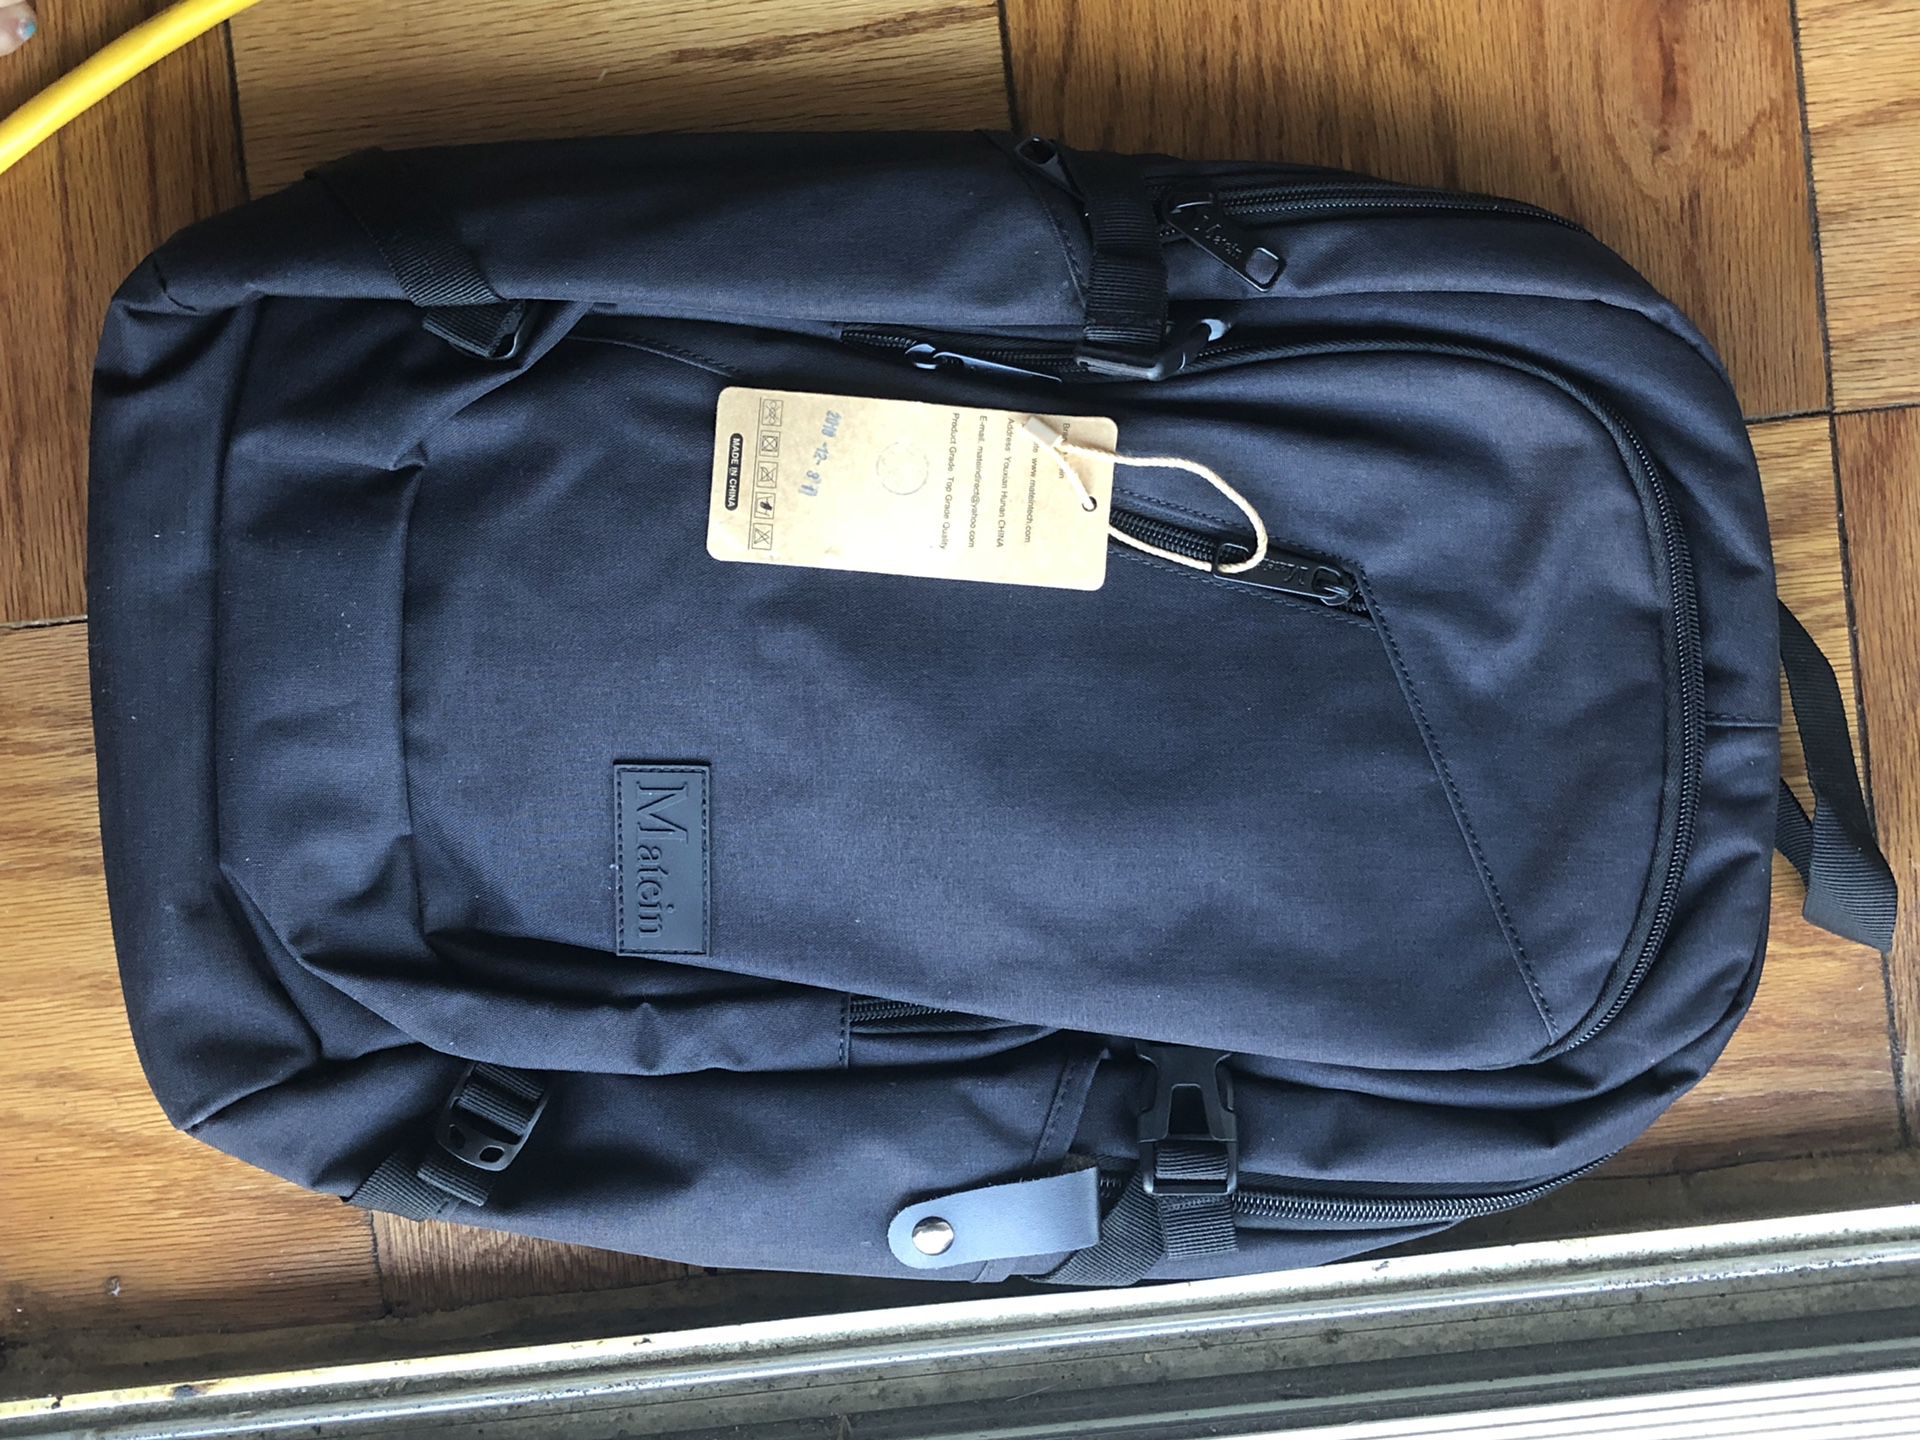 New Backpack black book-bag fits large laptop